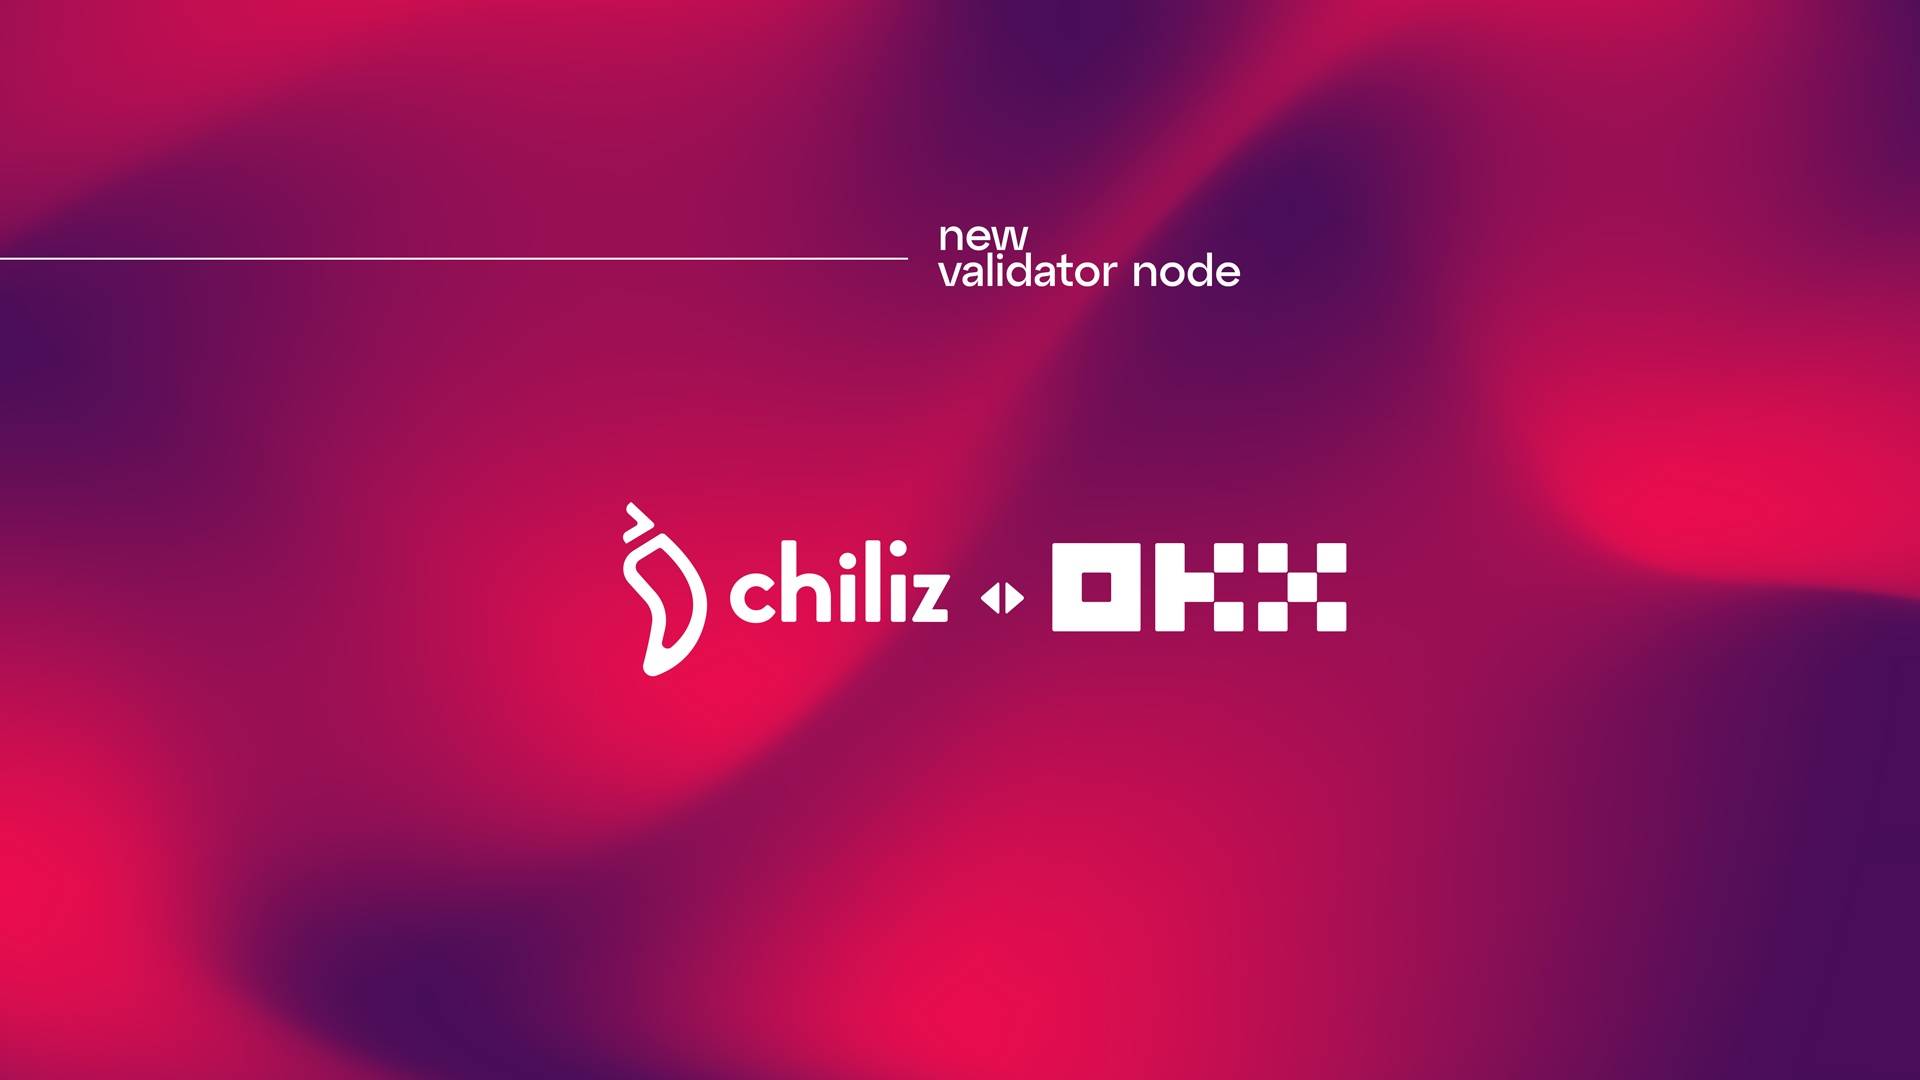 Sàn giao dịch tiền điện tử OKX trở thành validator của Chiliz Chain